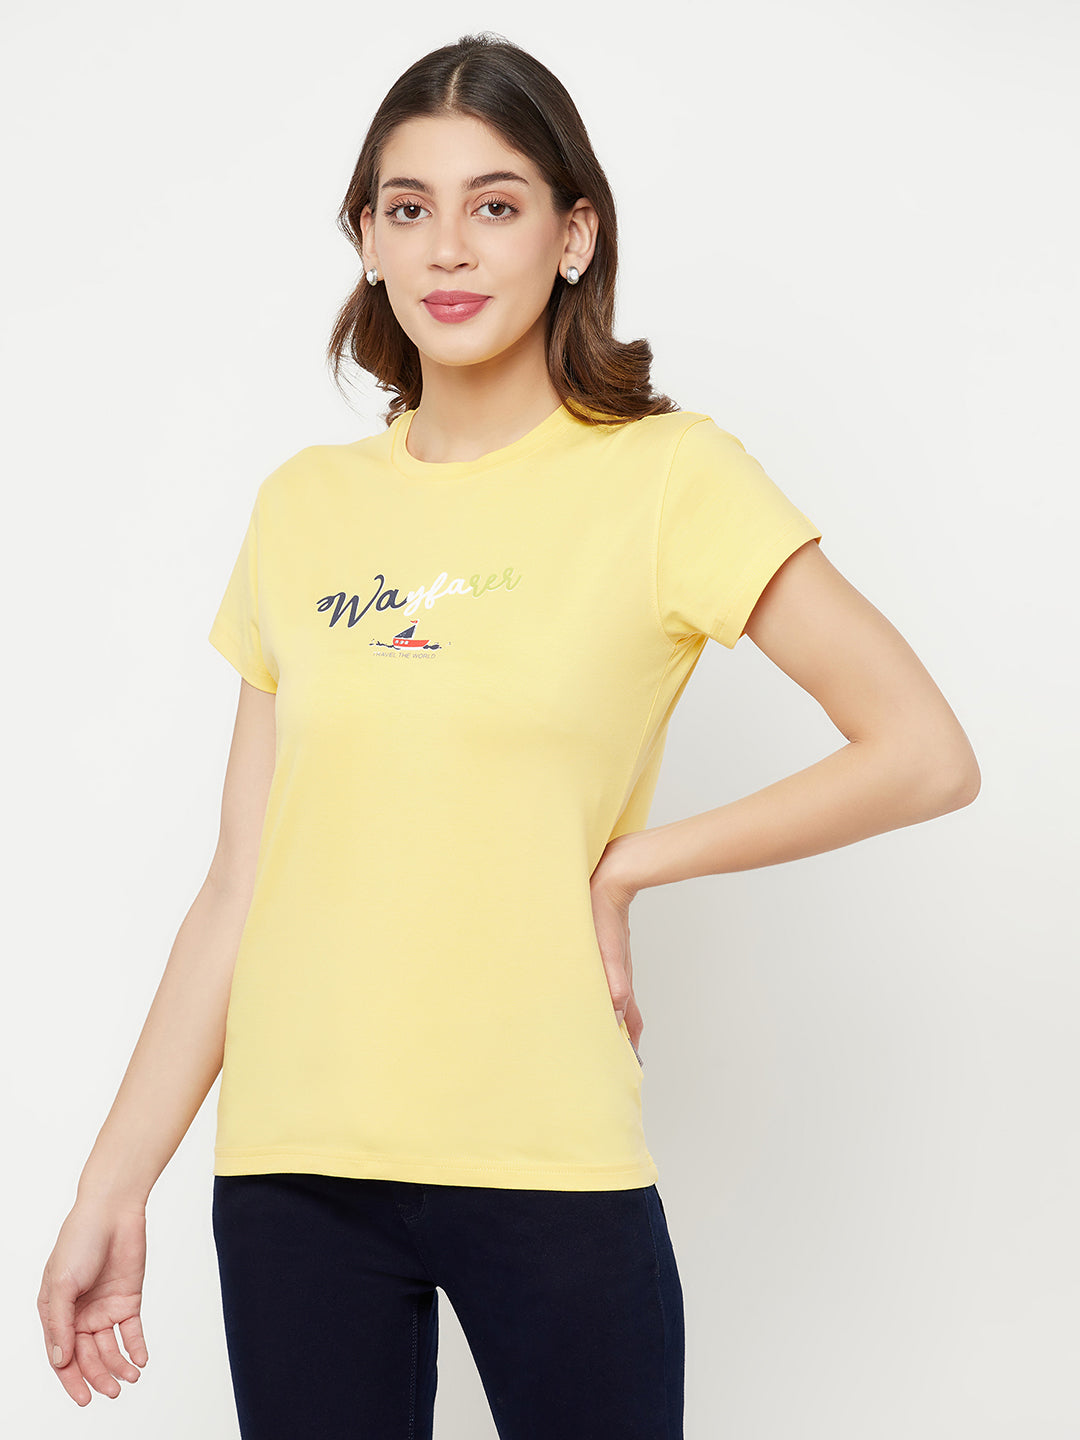 Yellow Printed Round Neck T-Shirt - Women T-Shirts